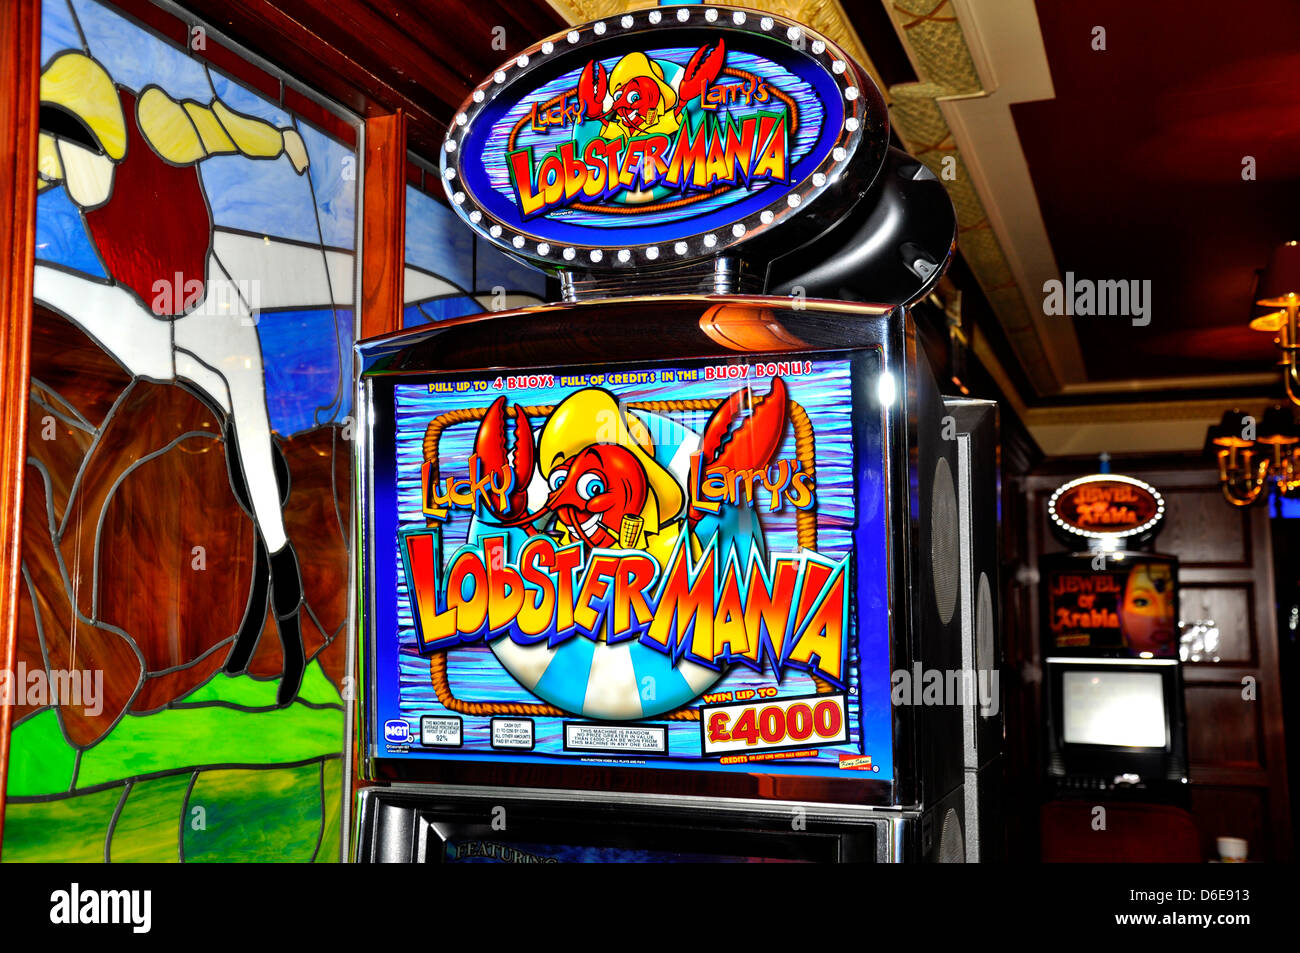 Jeu de casino machine à sous arcade lobster mania quatre mille livres anglais jackpot jeux gamble de l'argent fruit Banque D'Images